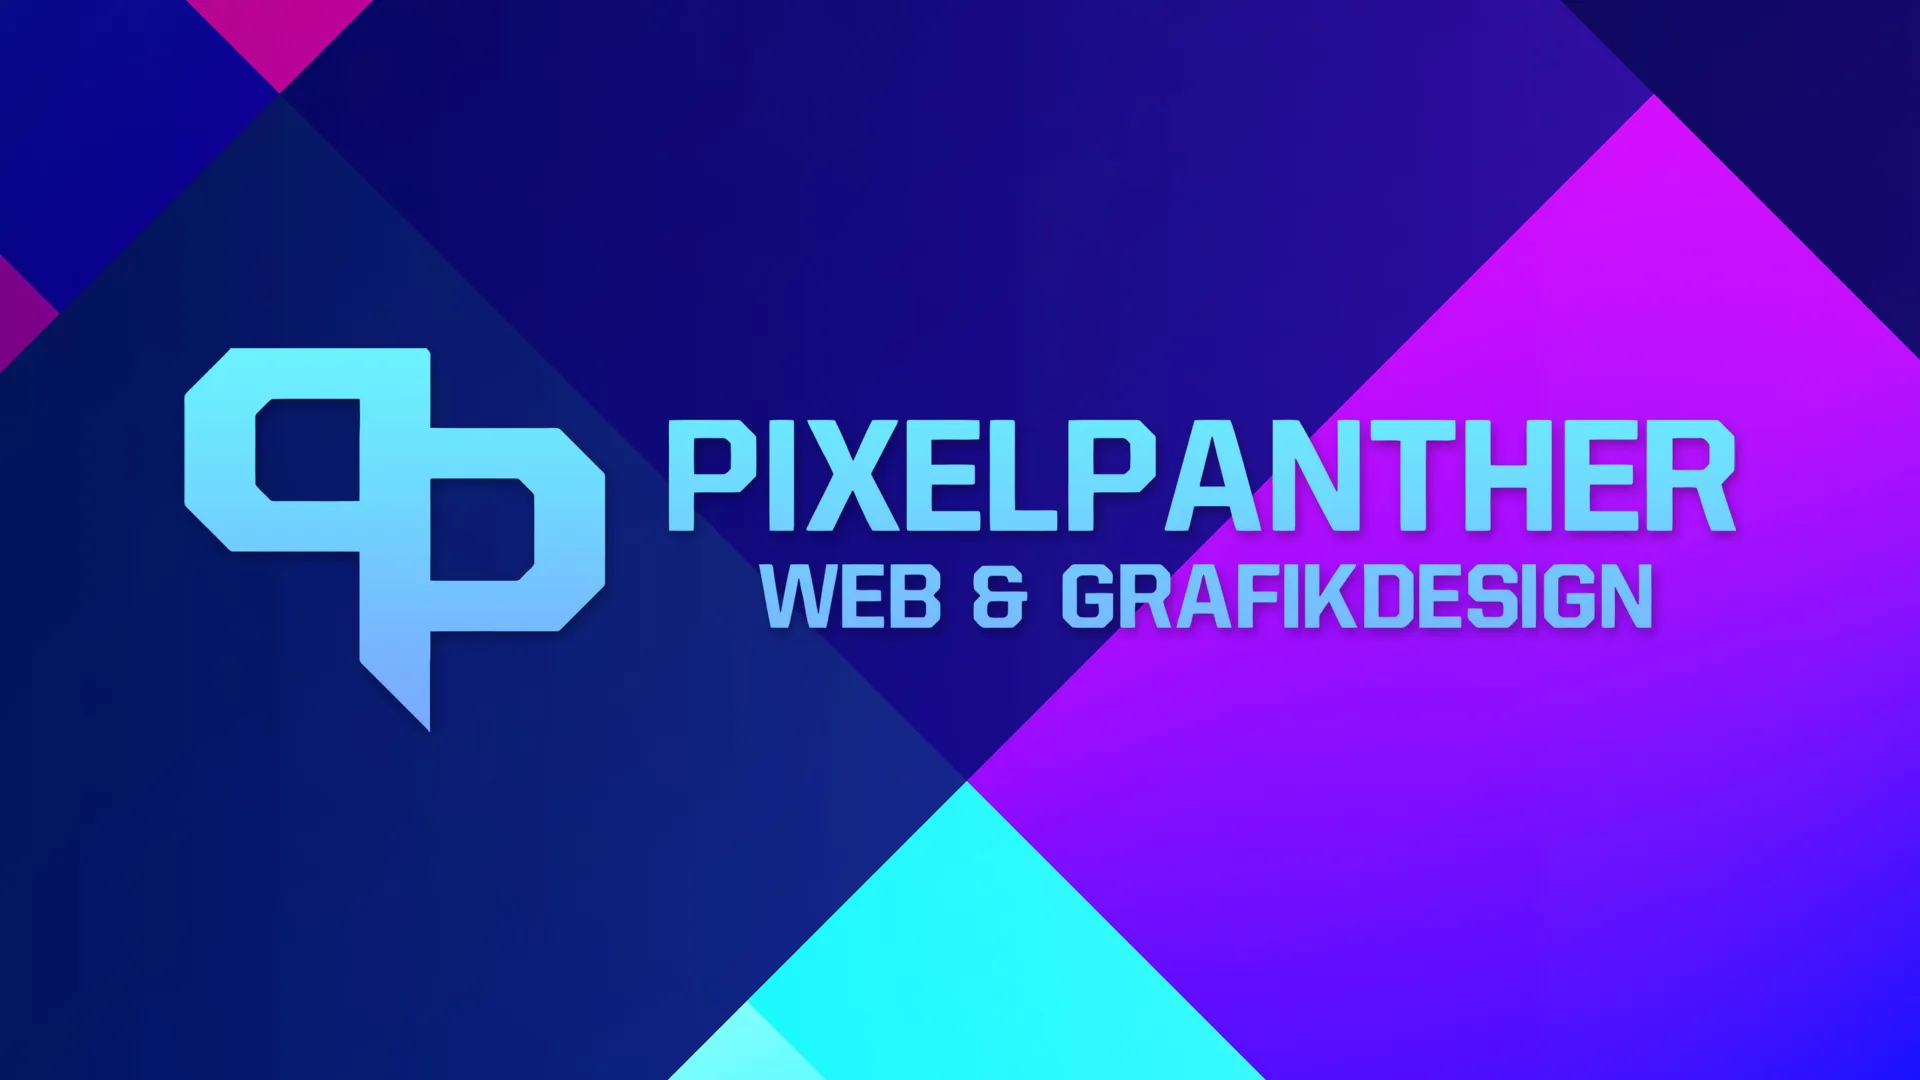 (c) Pixelpanther.eu